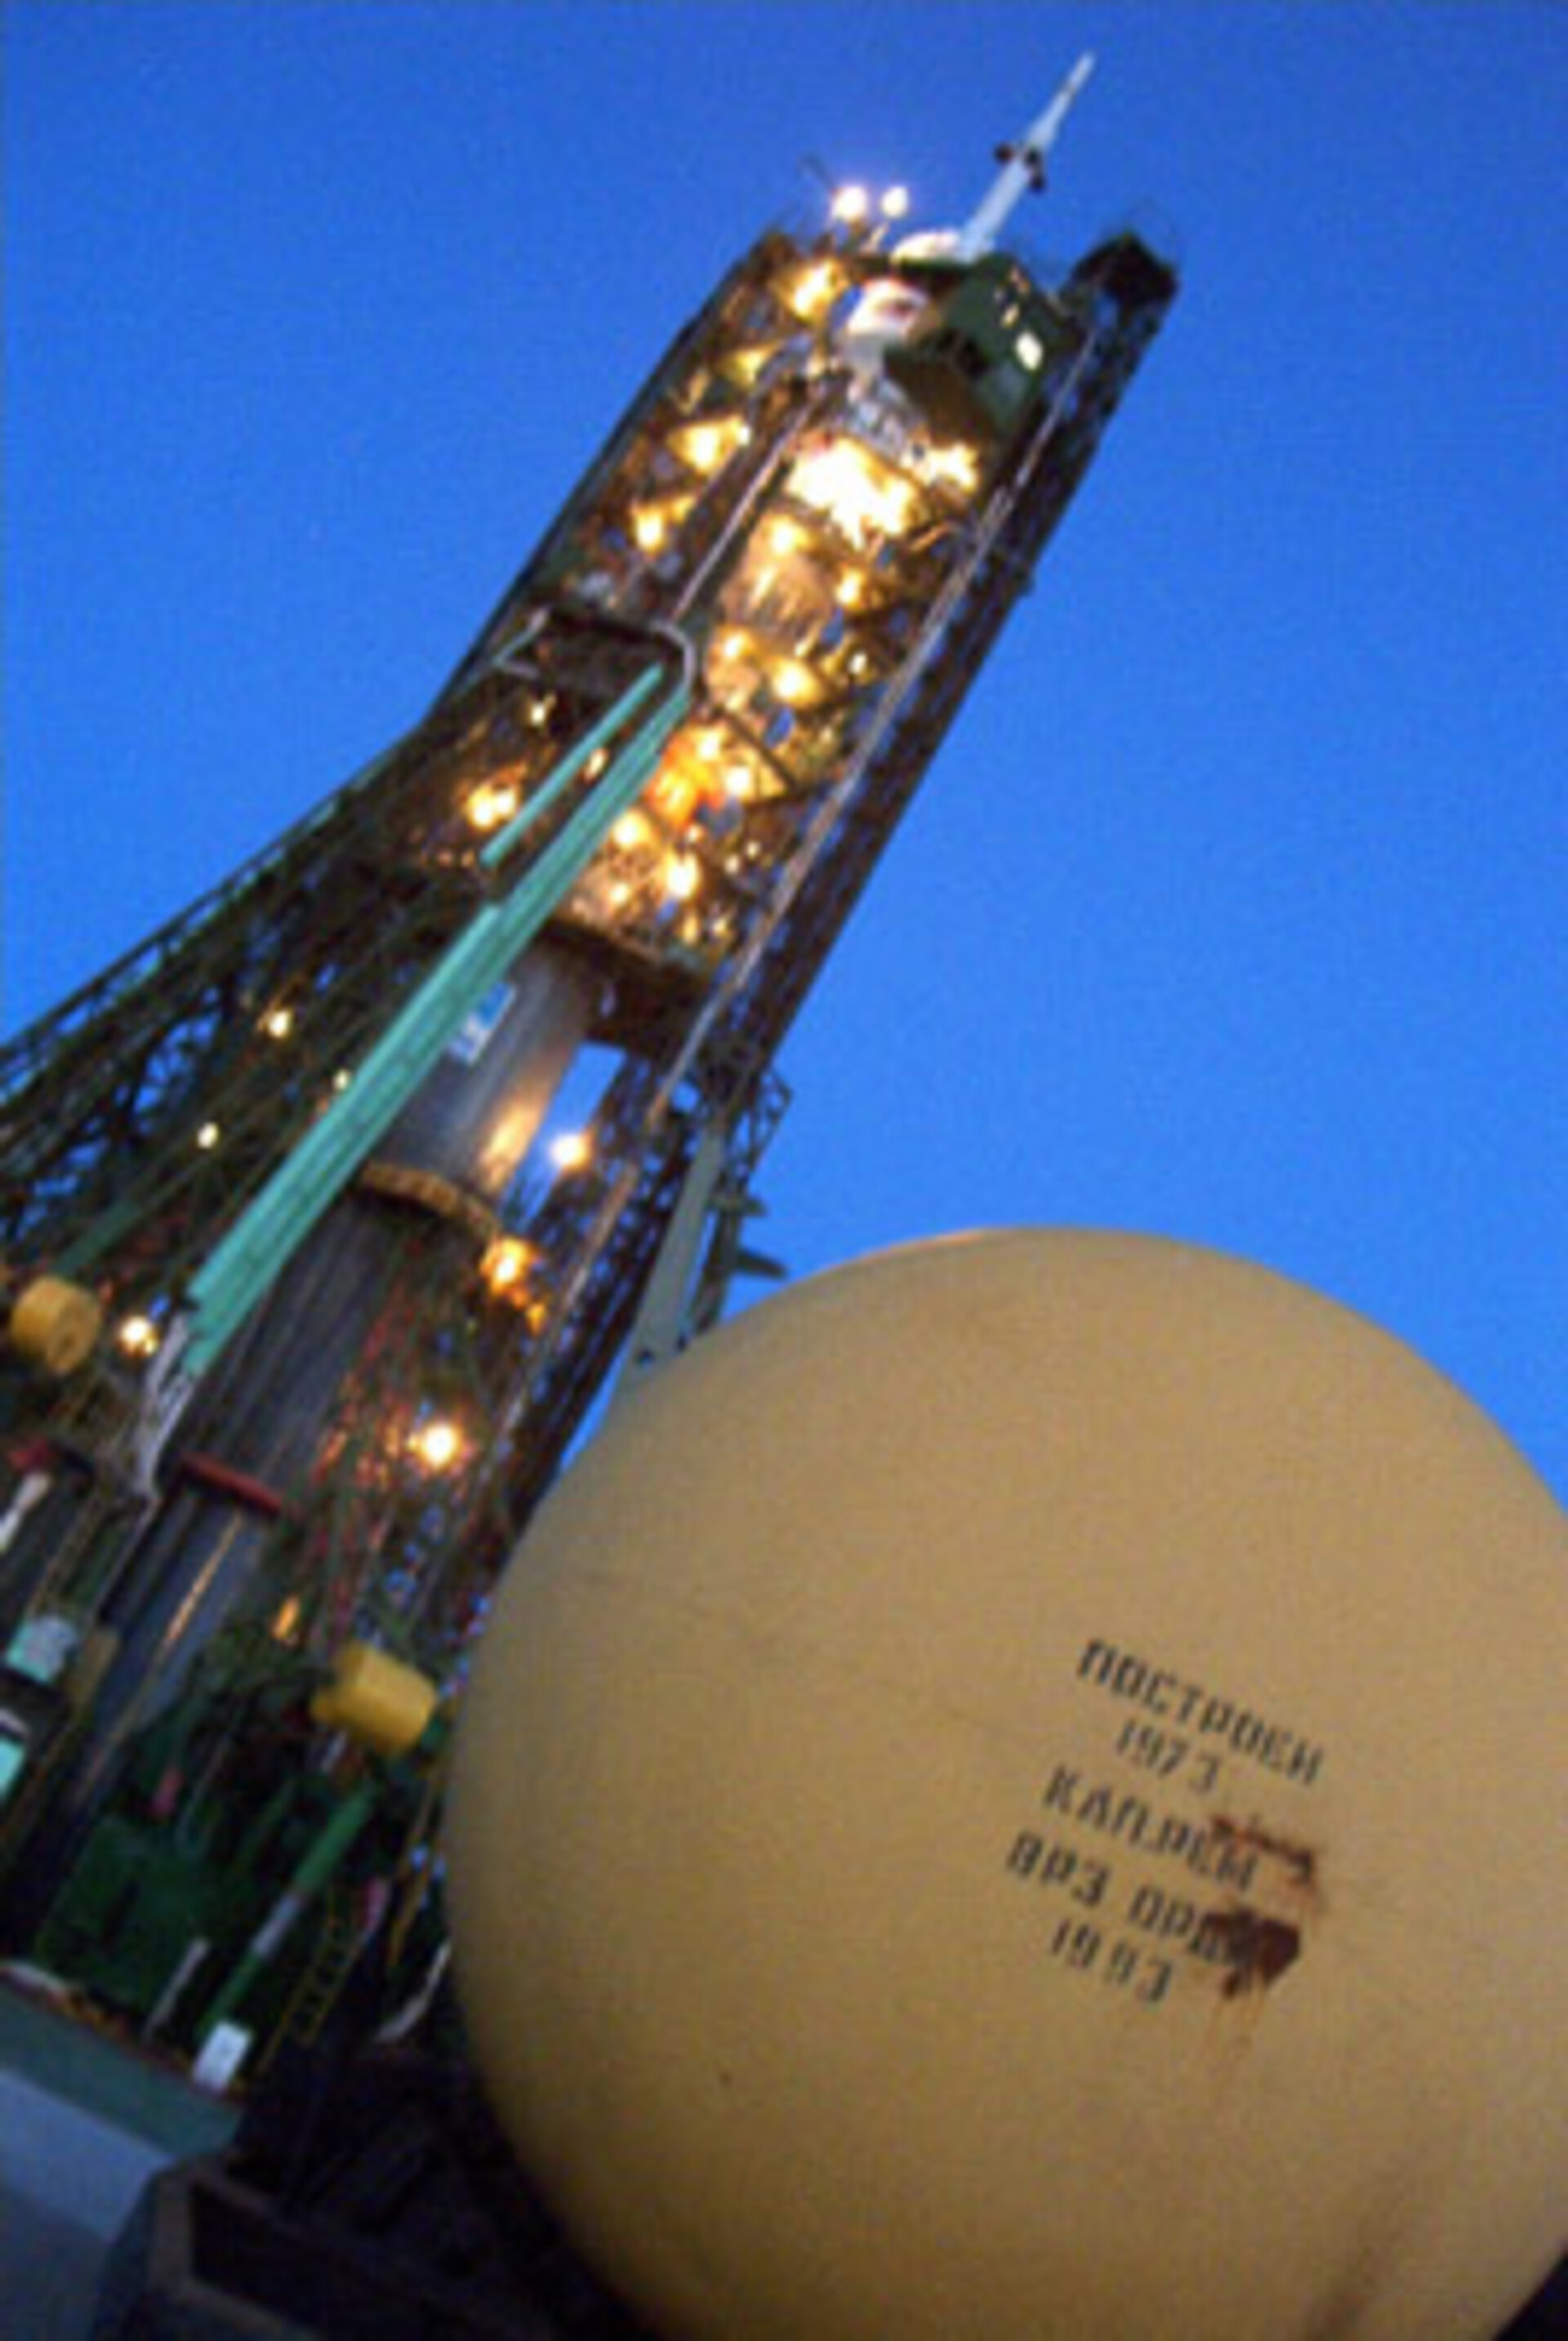 28 Oktober. De Sojoez-lanceerraket van Frank op lanceerplatfrom nummer één in Bajkonoer, Kazachstan